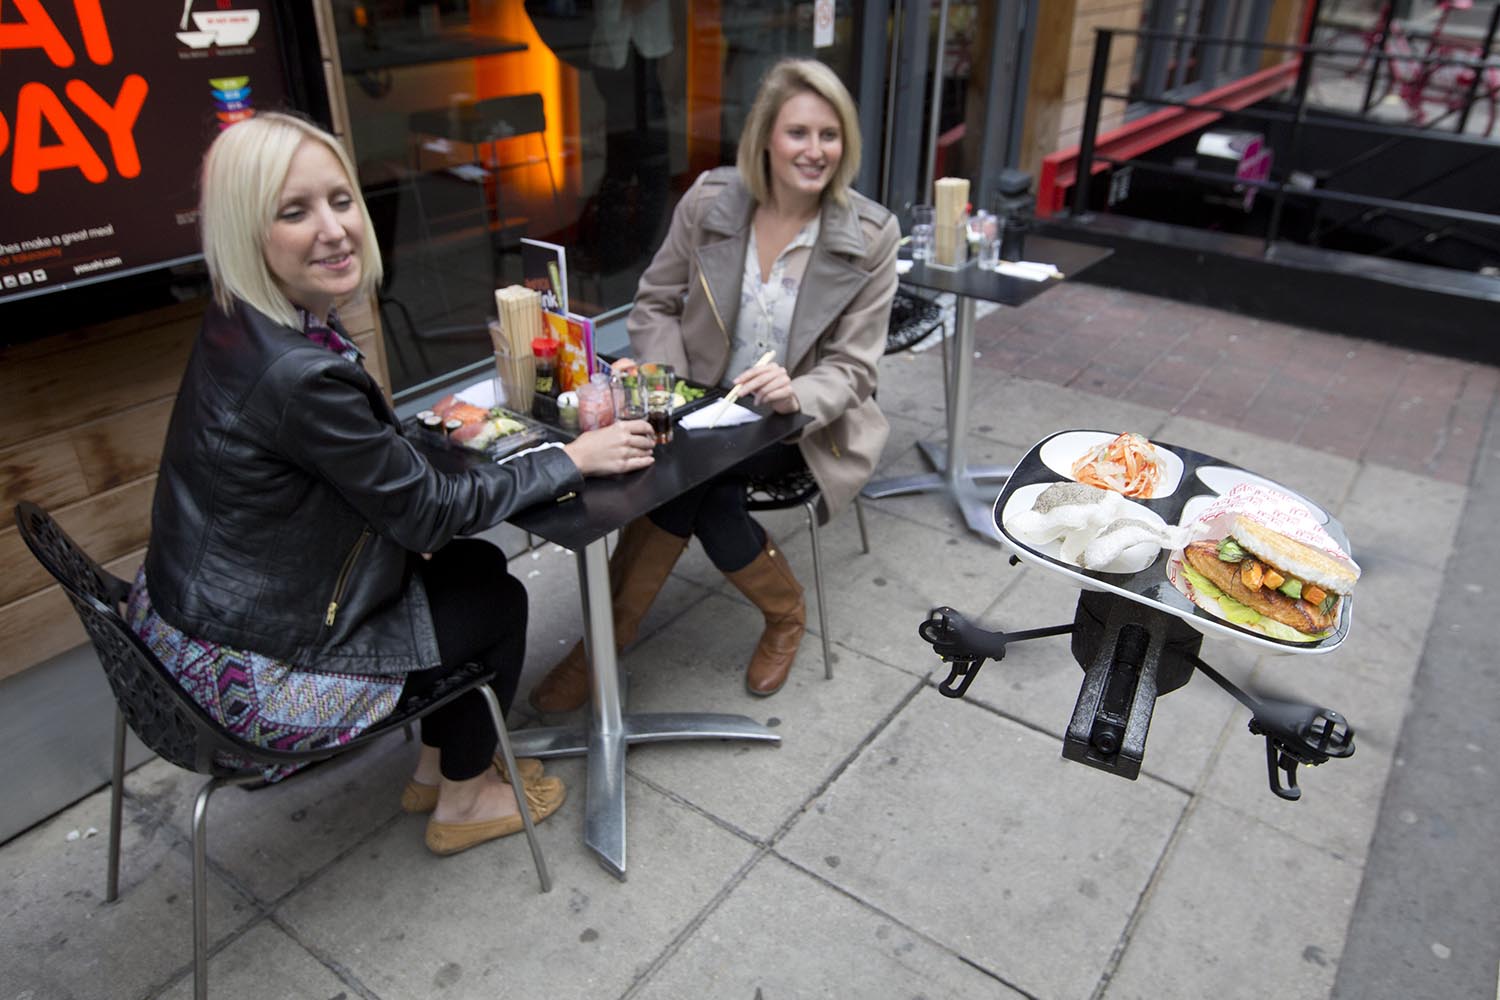 Especial mundo robot. iTray, un robot dirigido a control remoto desde un iPad, sirve la comida